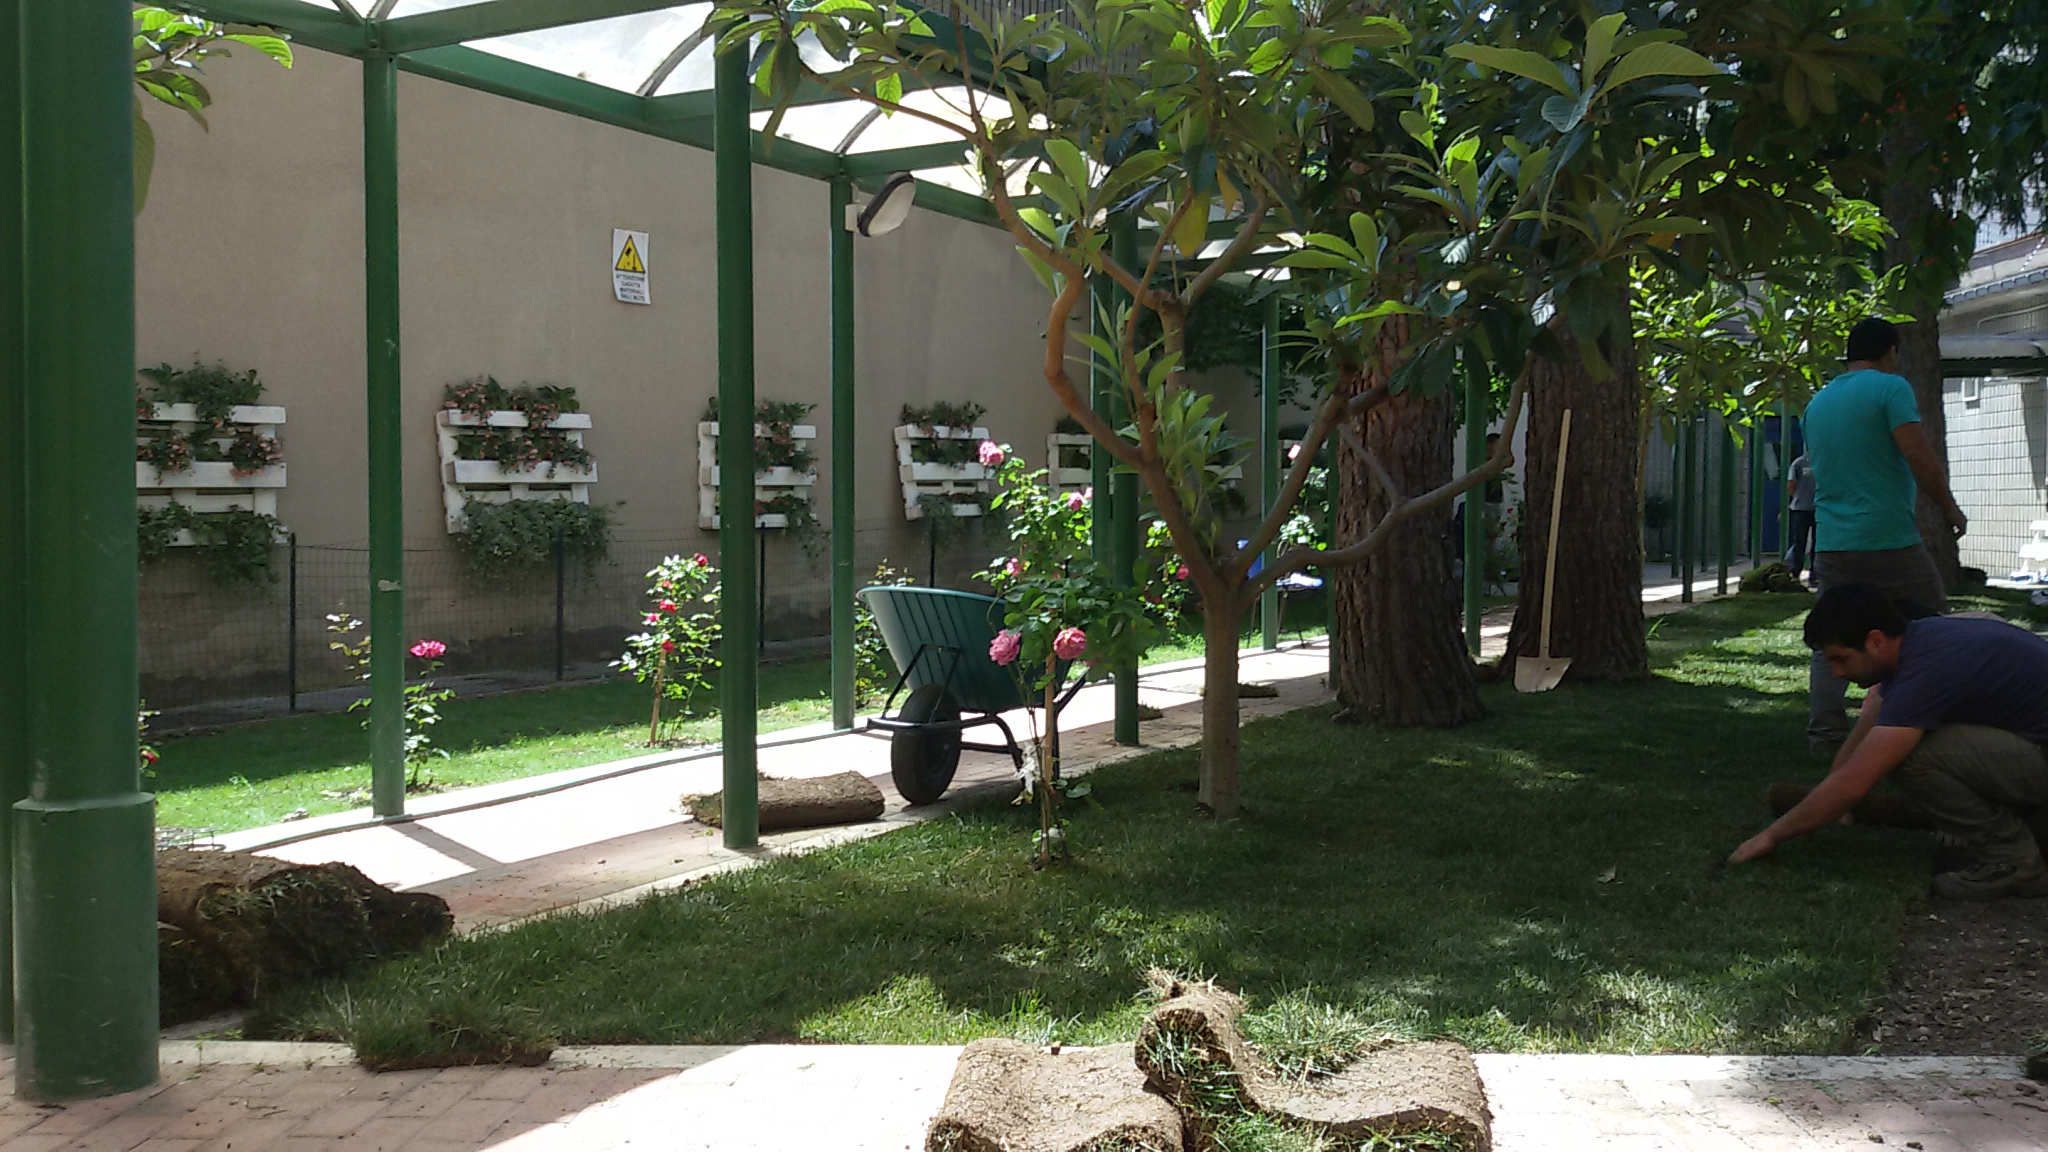 La scuola di Campobasso, dove le pulizie le fanno i detenuti. E in cambio studiano e si diplomano (foto)